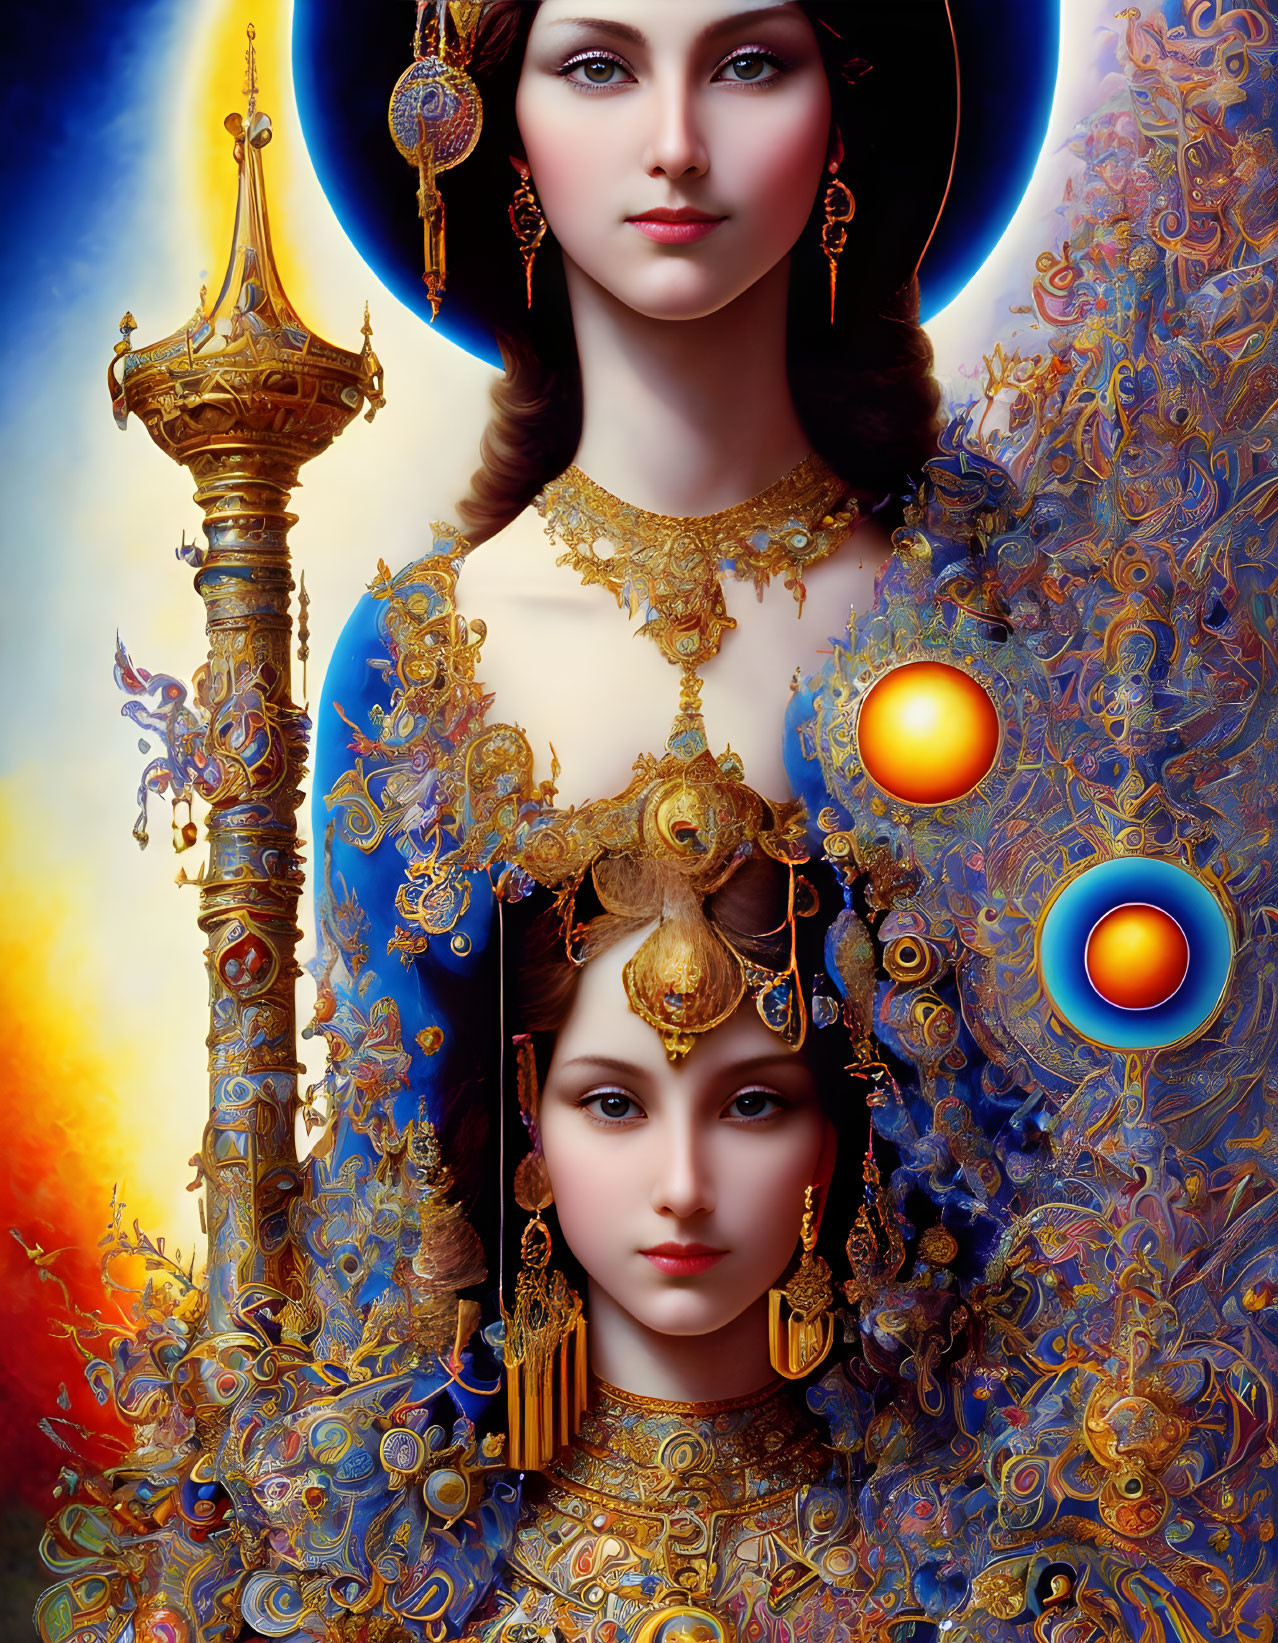 Vivid Artwork: Two Women in Golden Headdresses